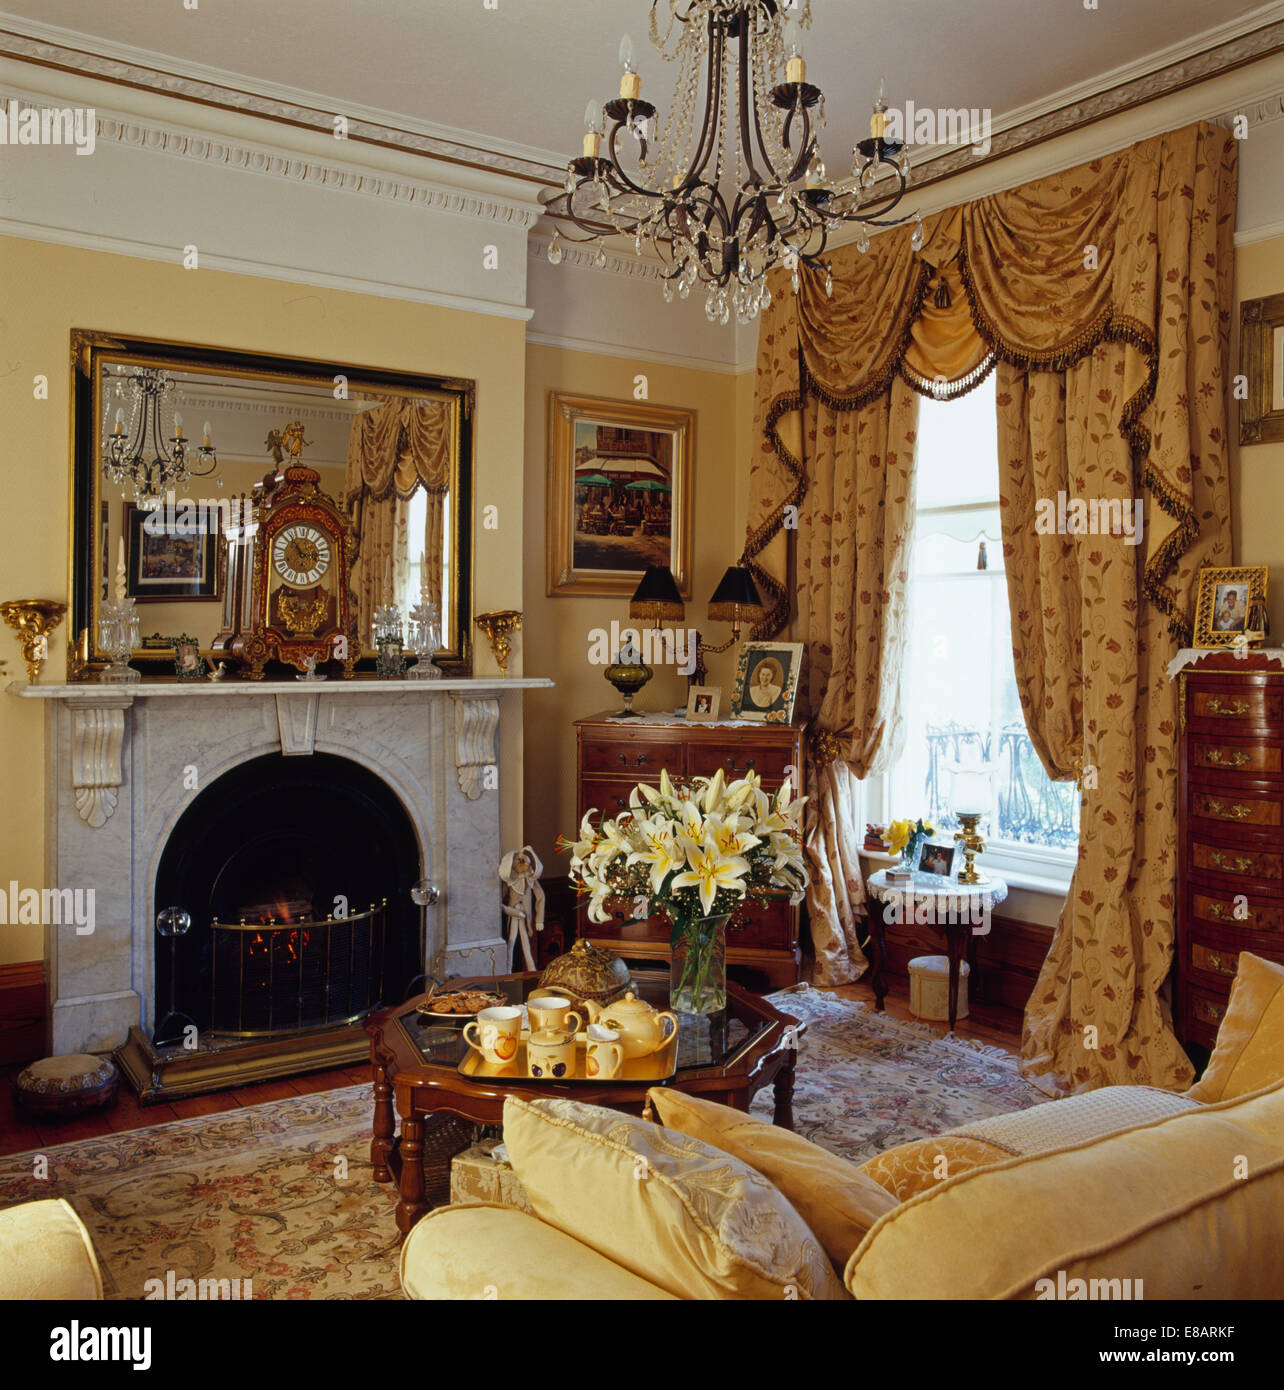 Grand miroir au-dessus de la cheminée de marbre en jaune salon avec rideaux opulents swagged +queue sur la fenêtre Banque D'Images